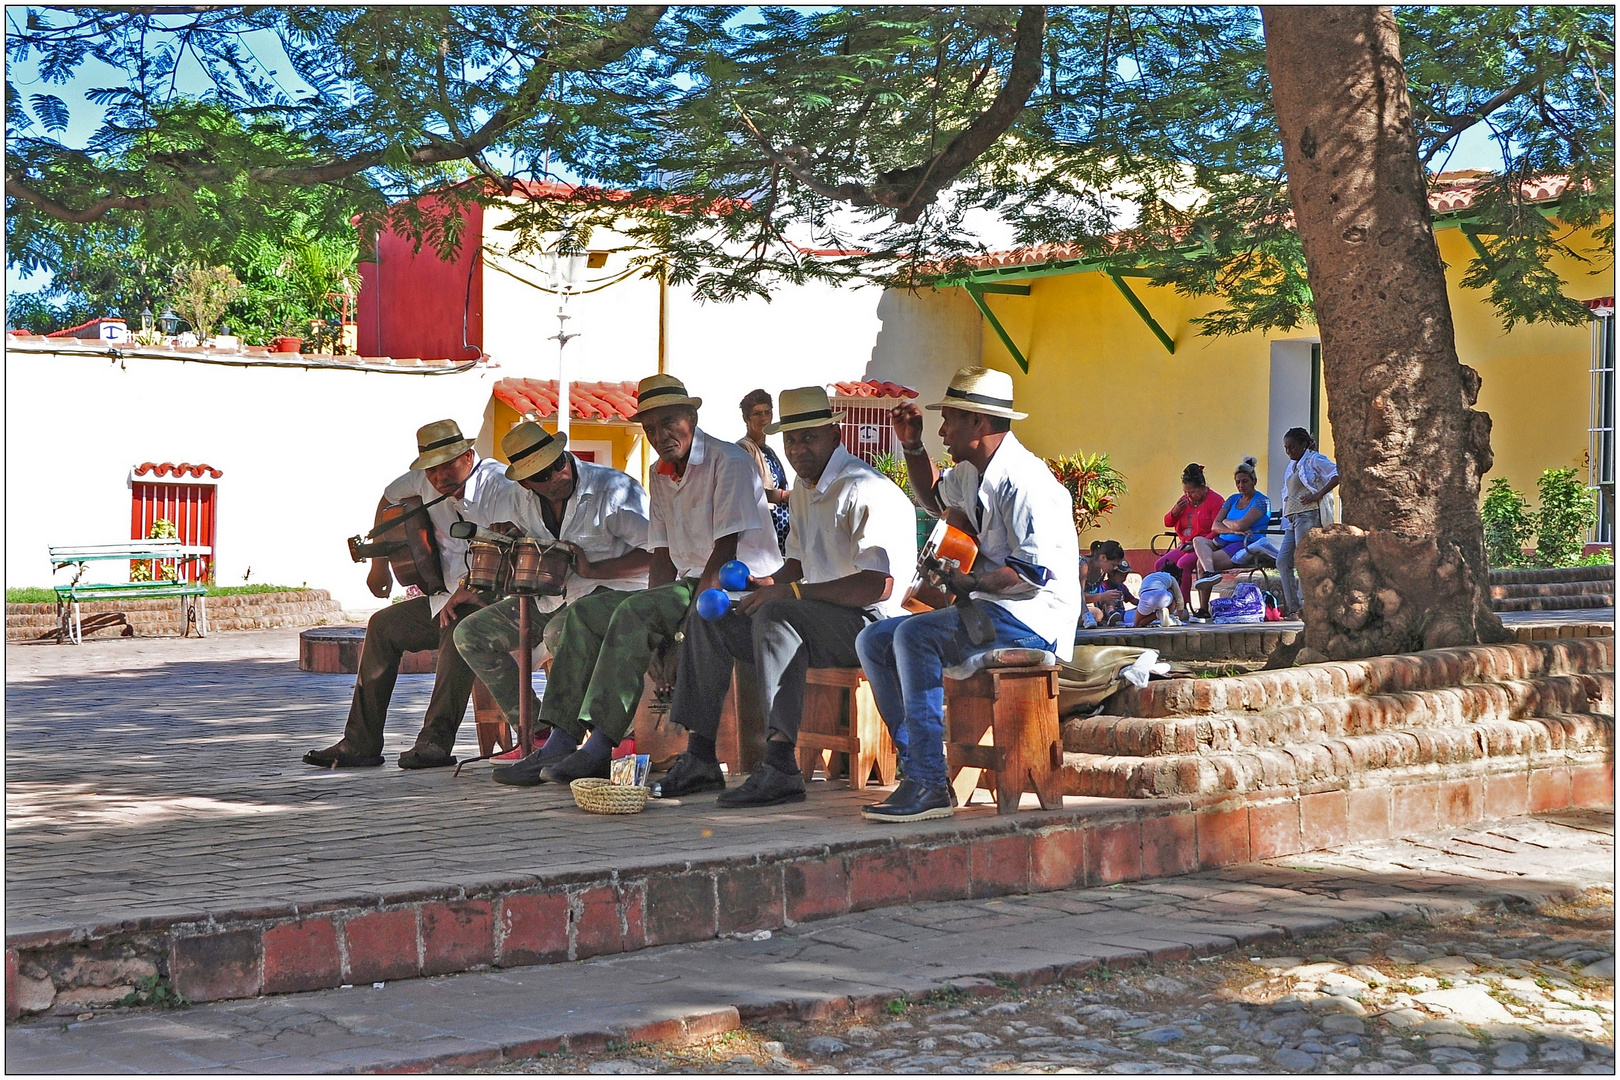 Kuba, Trinidad, Straßenmusik